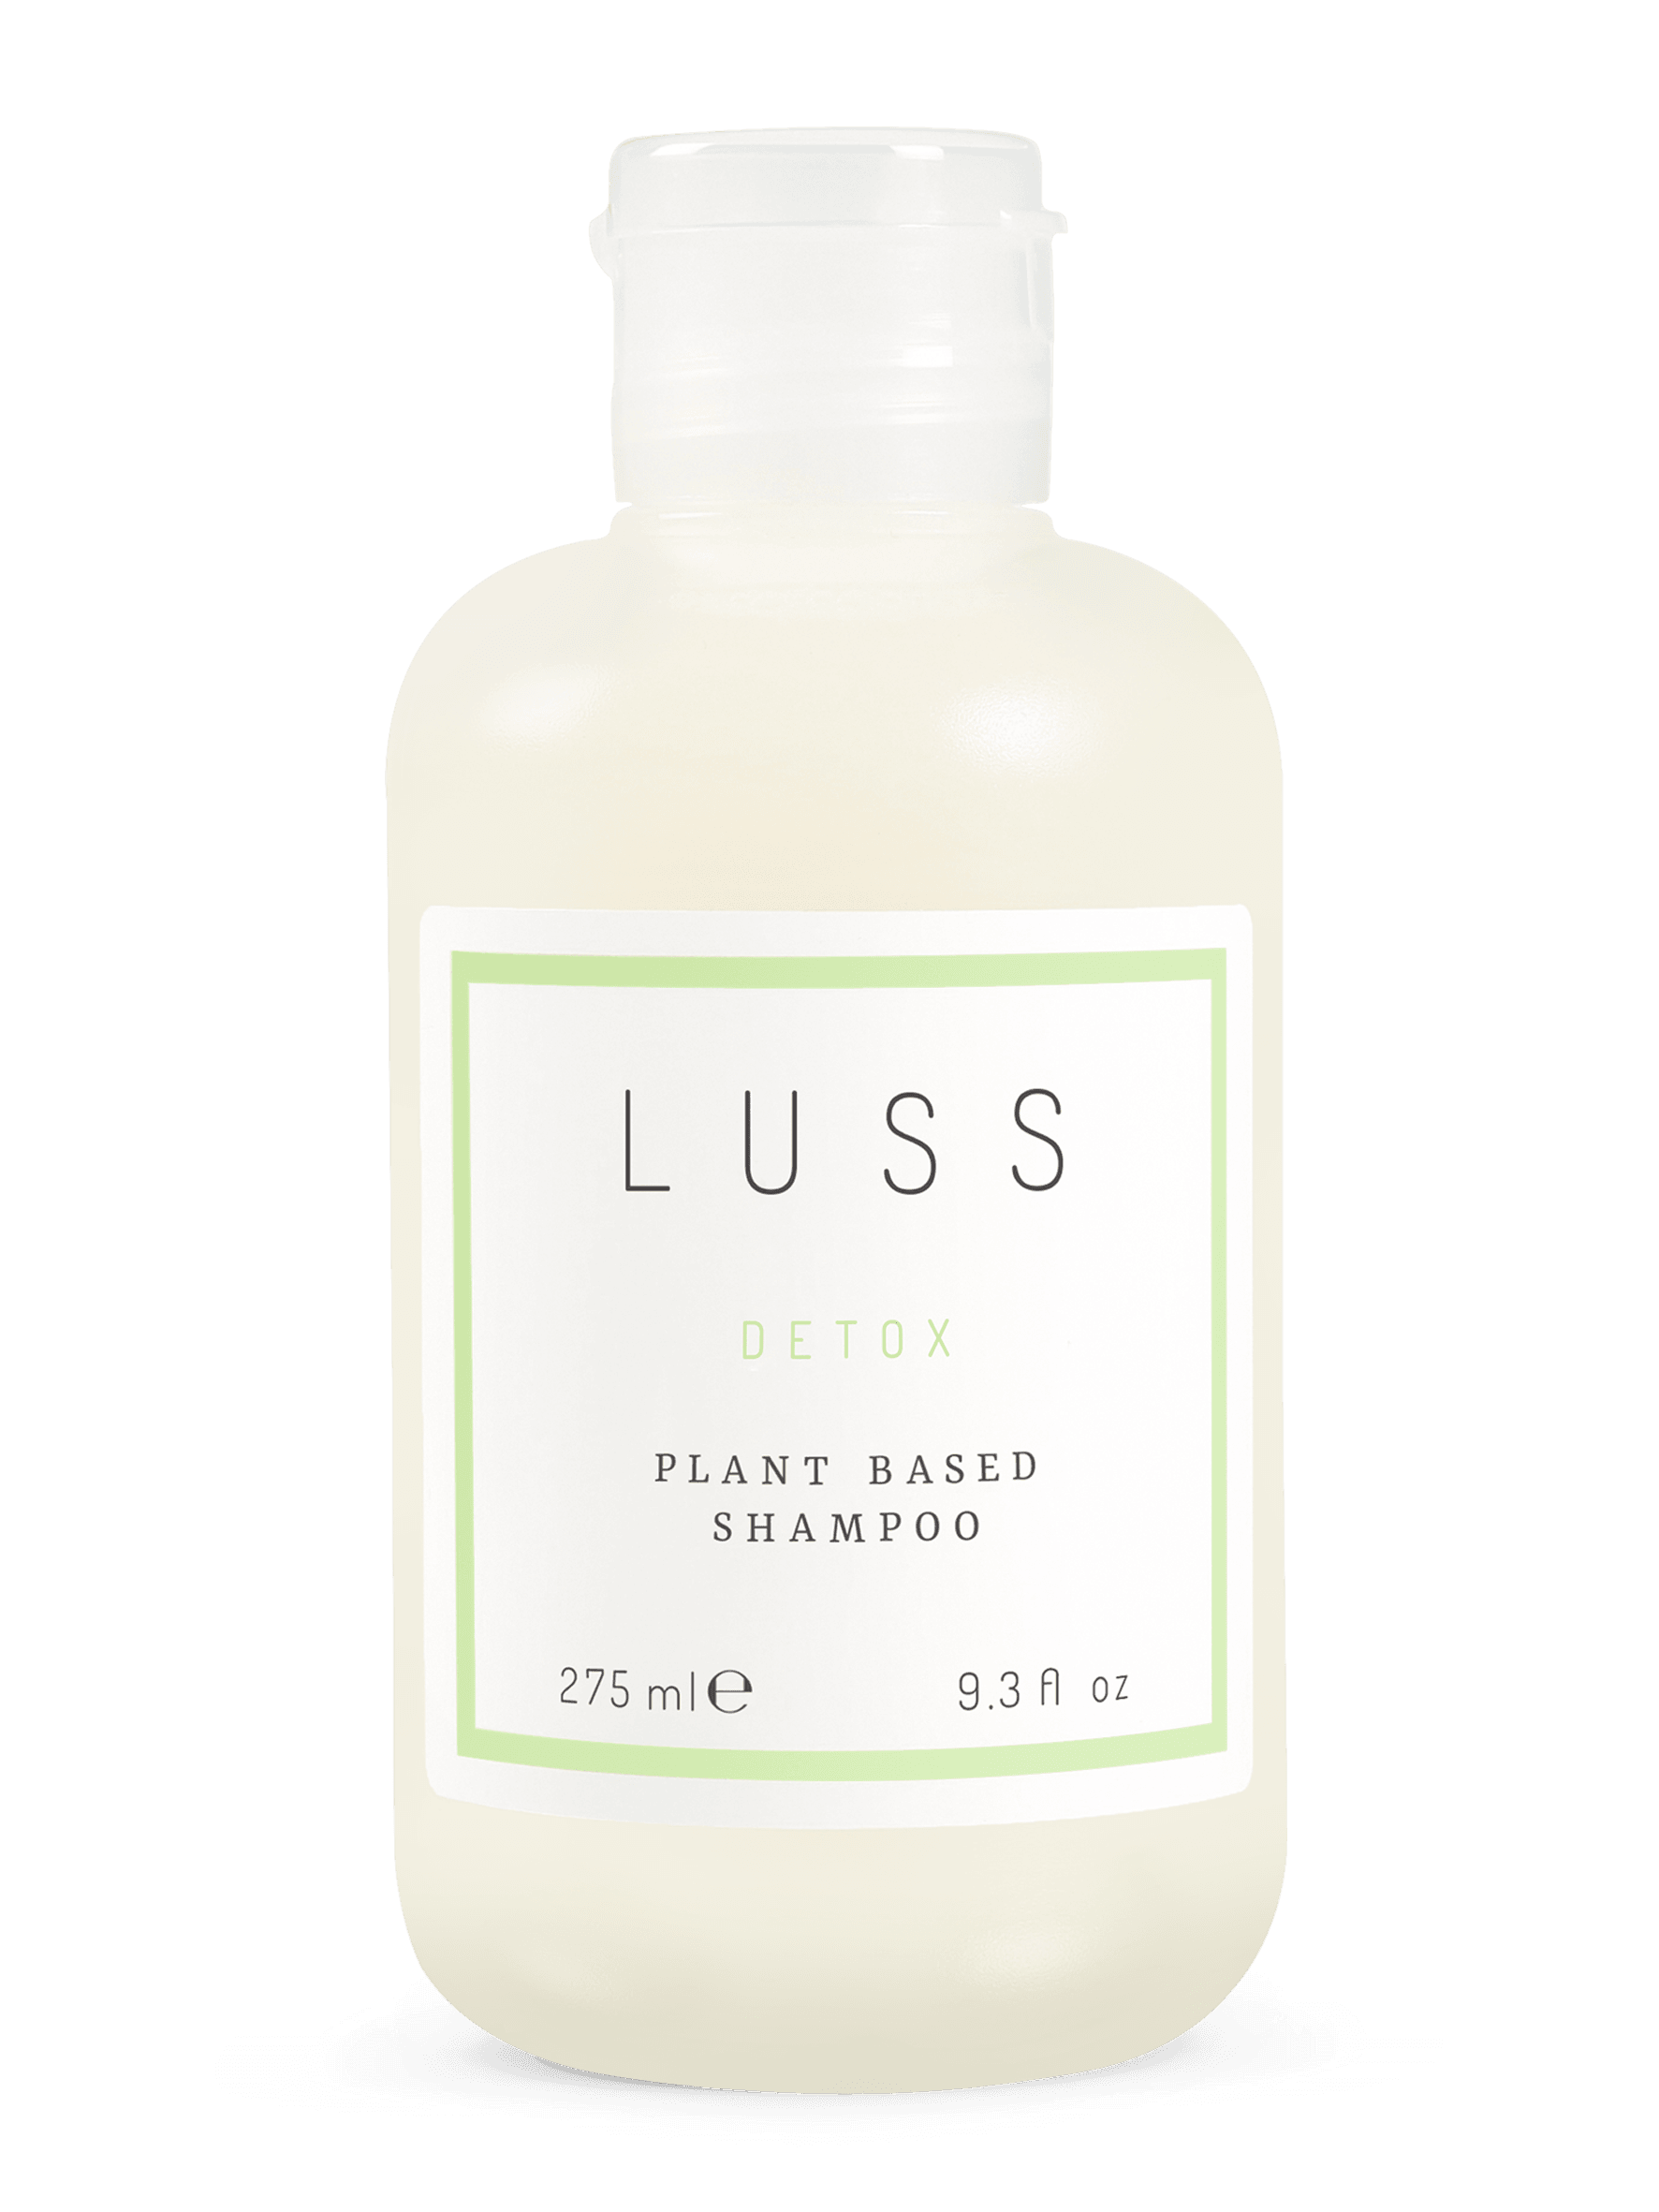 LUSS Plant Based Detox Shampoo Sls-Sles Sulfate Free